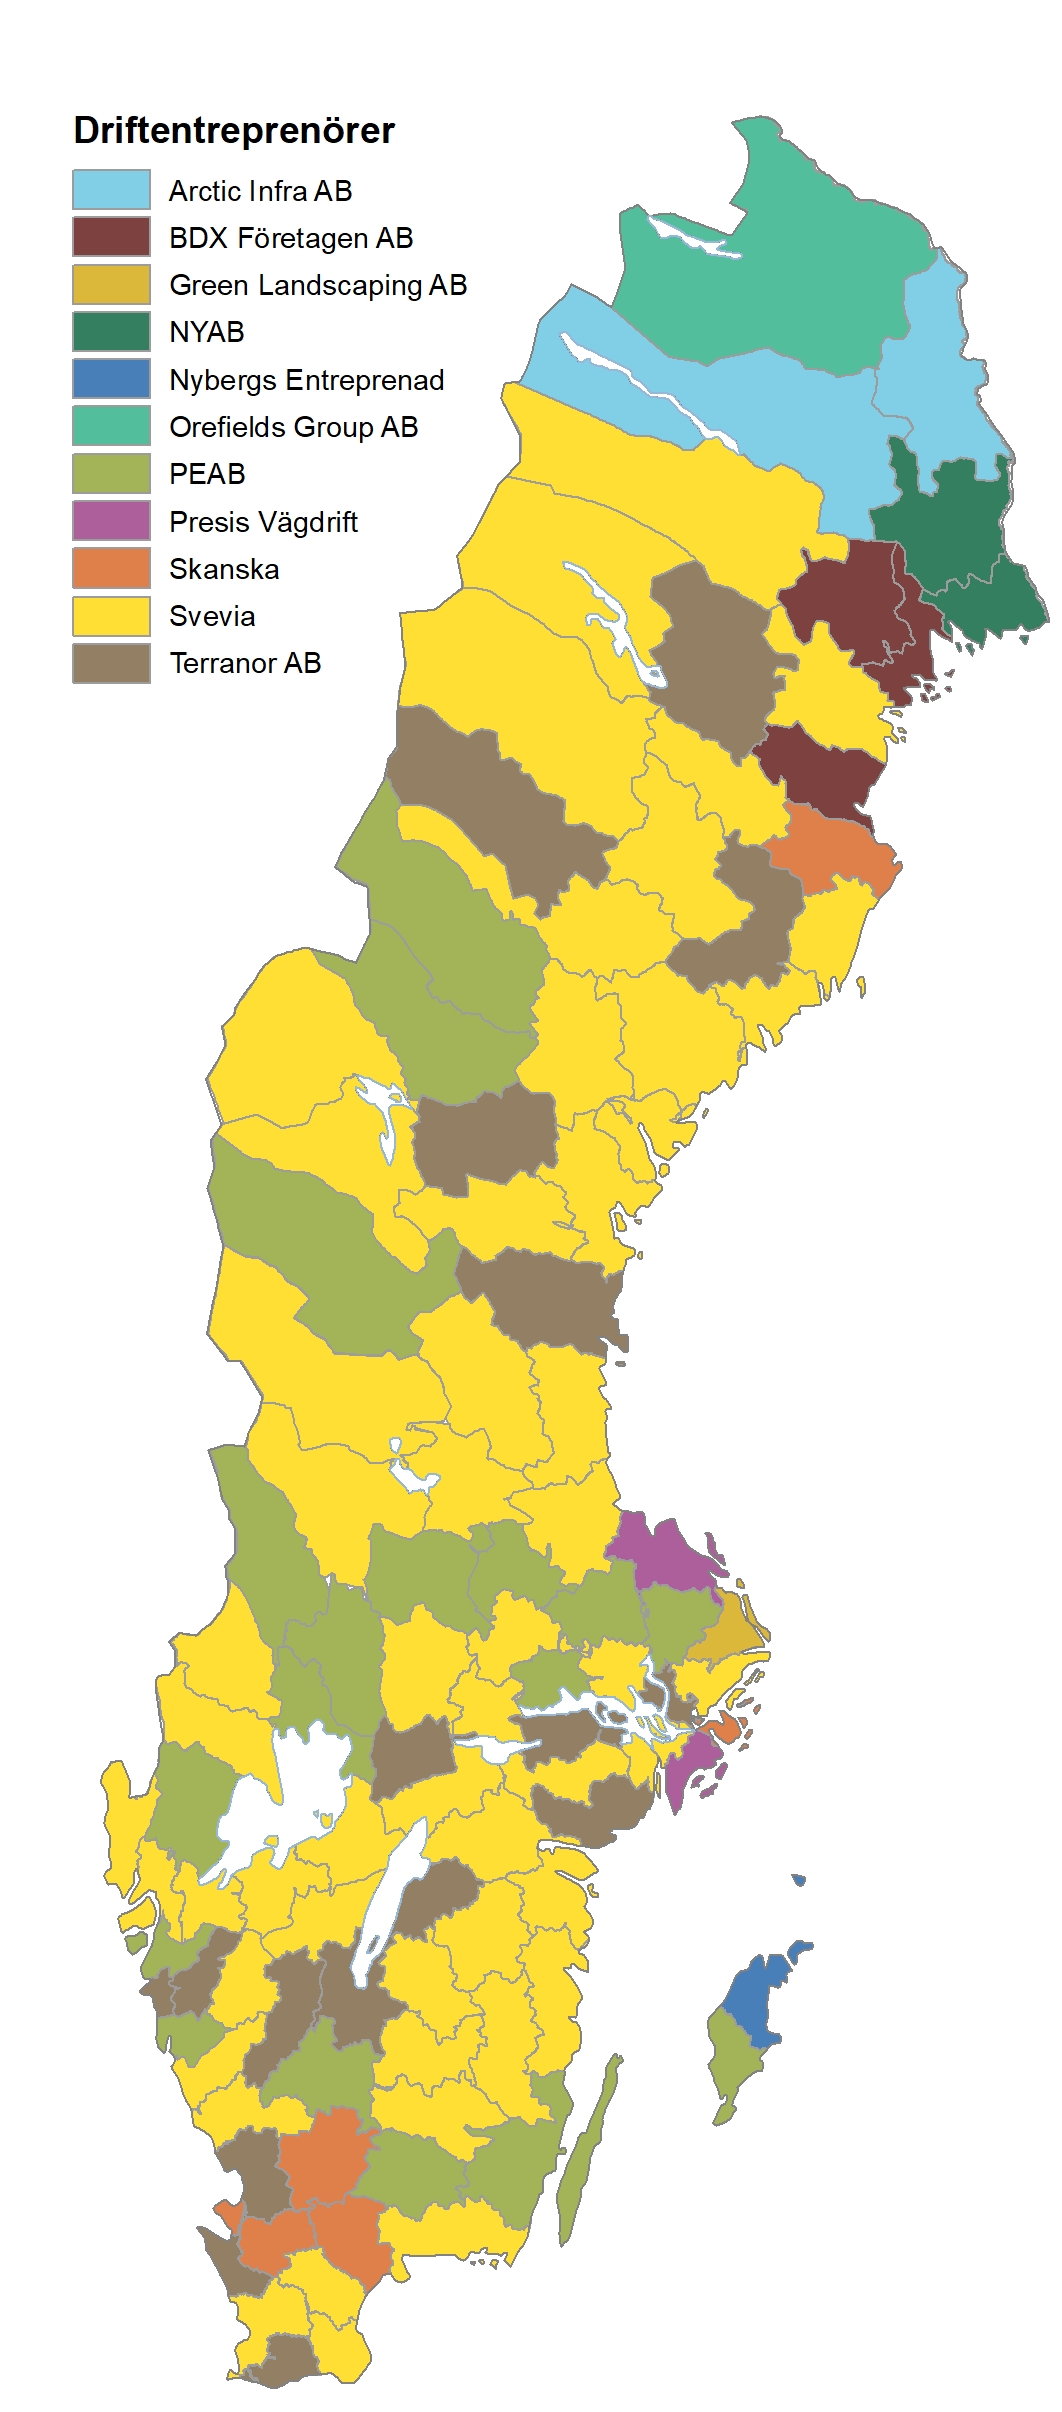 Kartbild över Sverige och fördelningen av driftentreprenörer vägar.